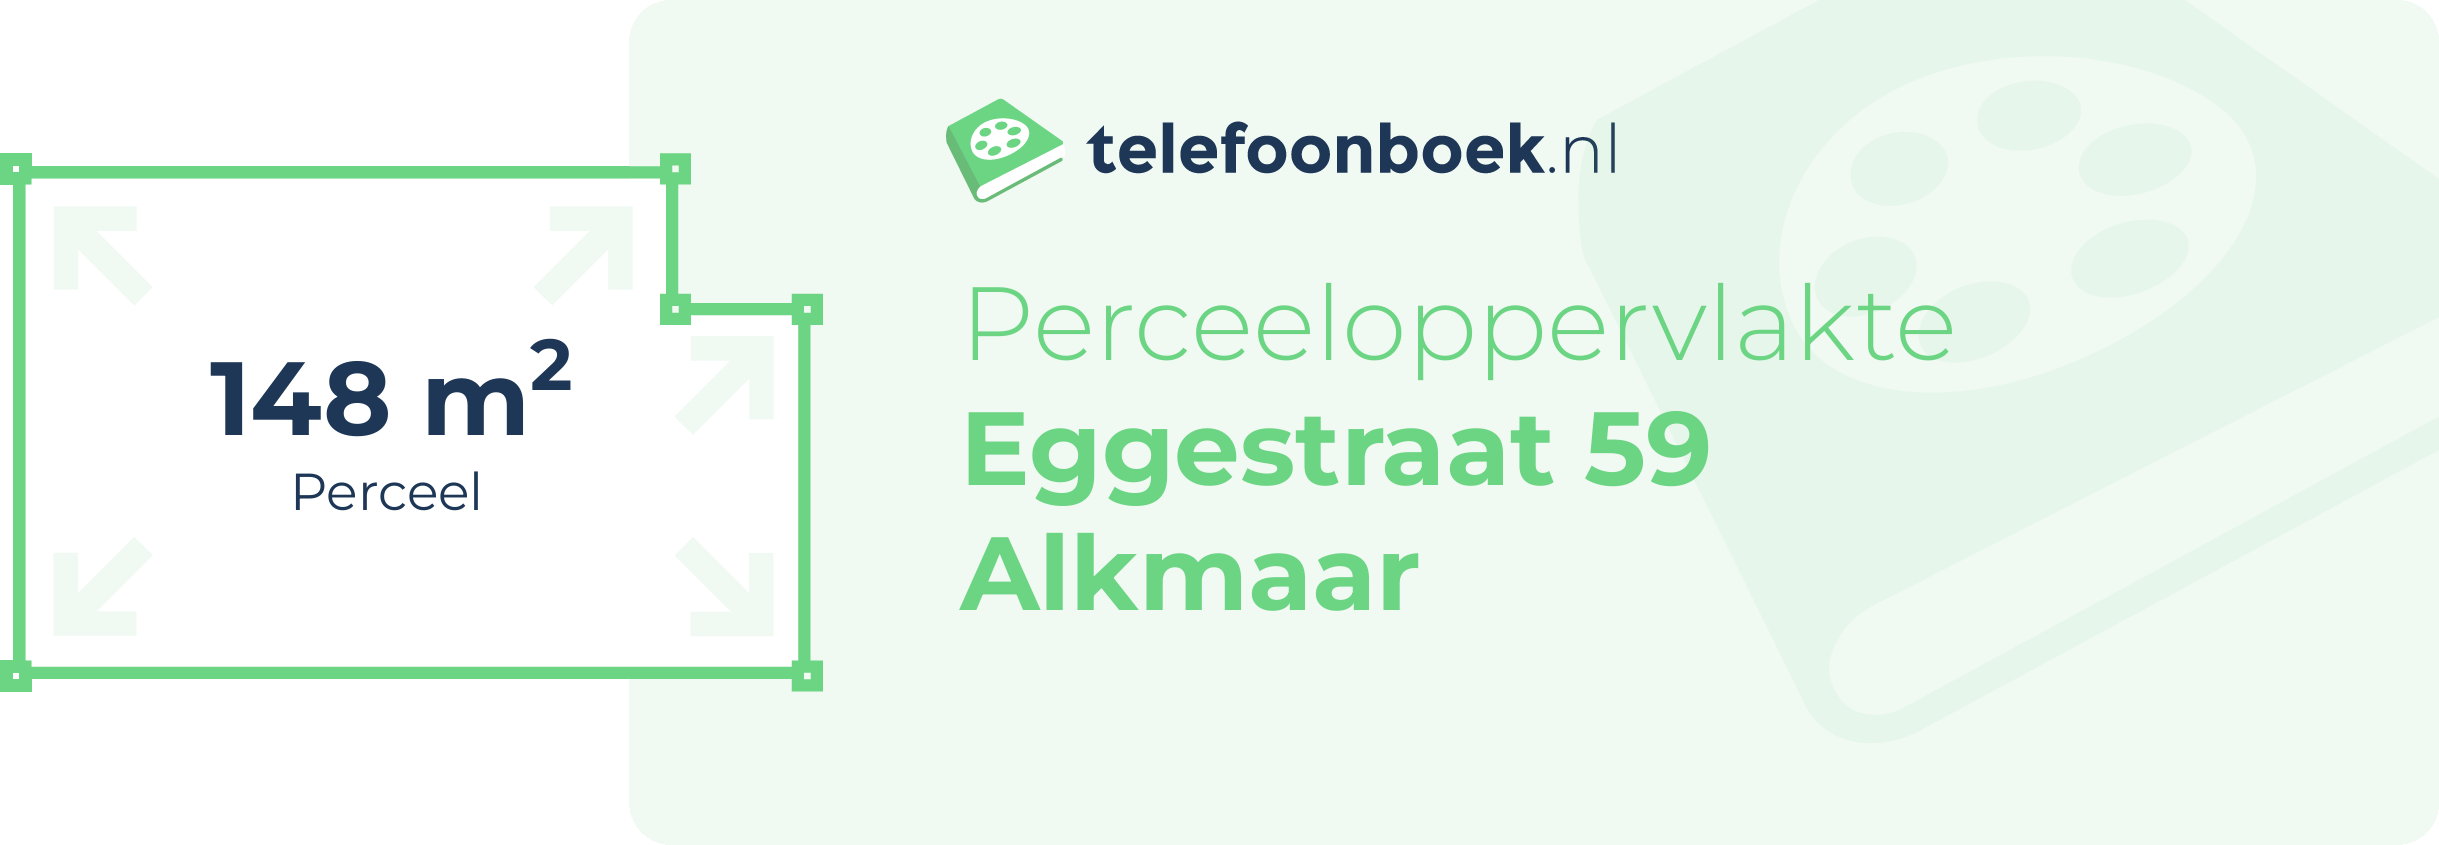 Perceeloppervlakte Eggestraat 59 Alkmaar